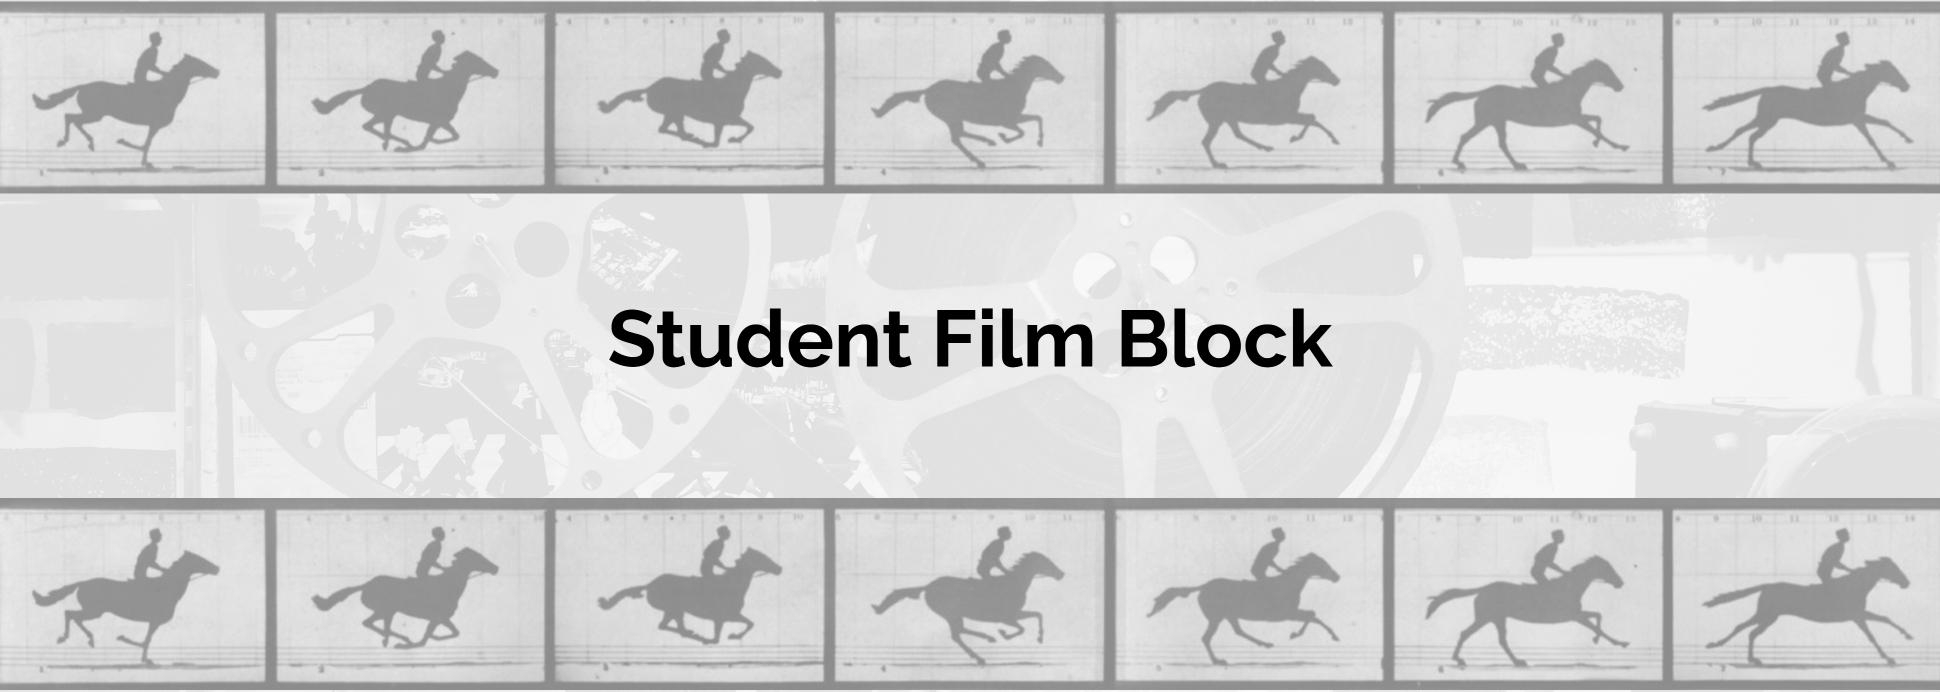 Student Film Block